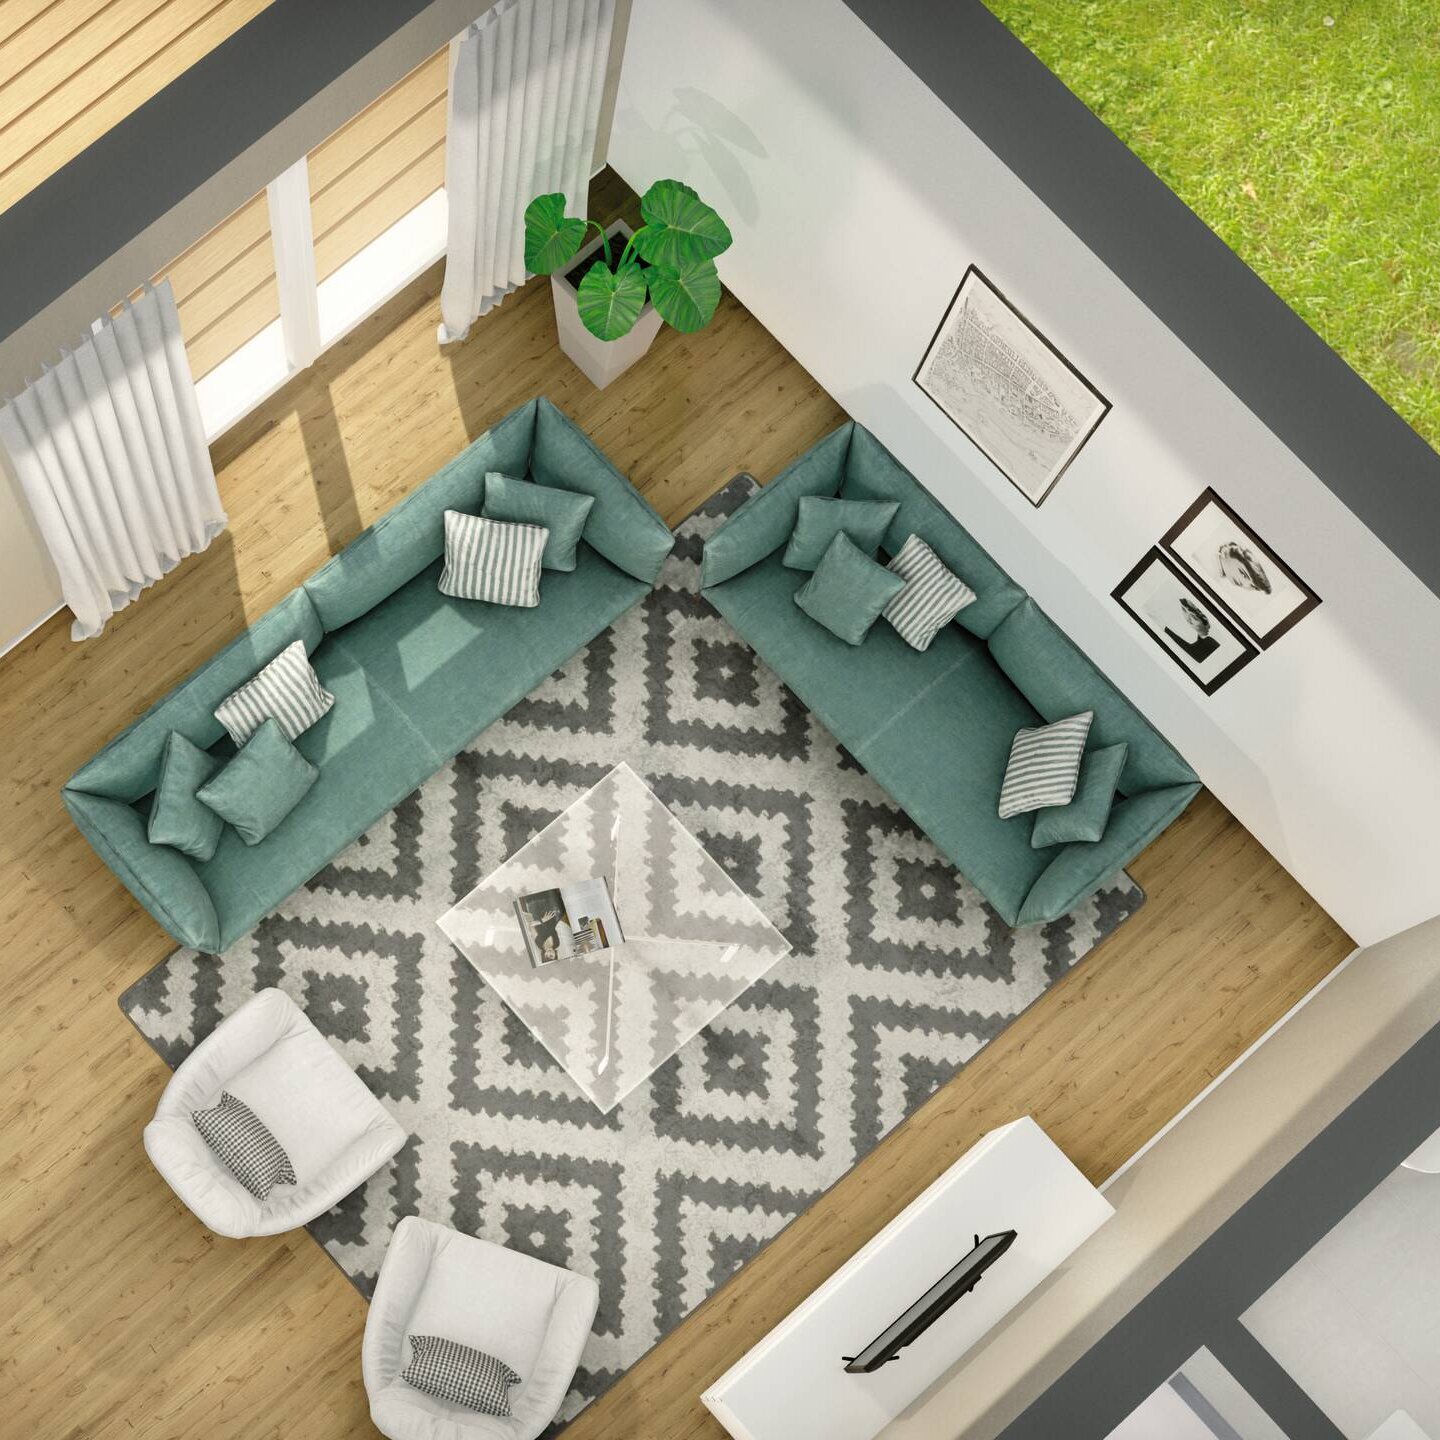 Detaillierte Gestaltung eines Wohnzimmers mit Fertighaus Konfigurator